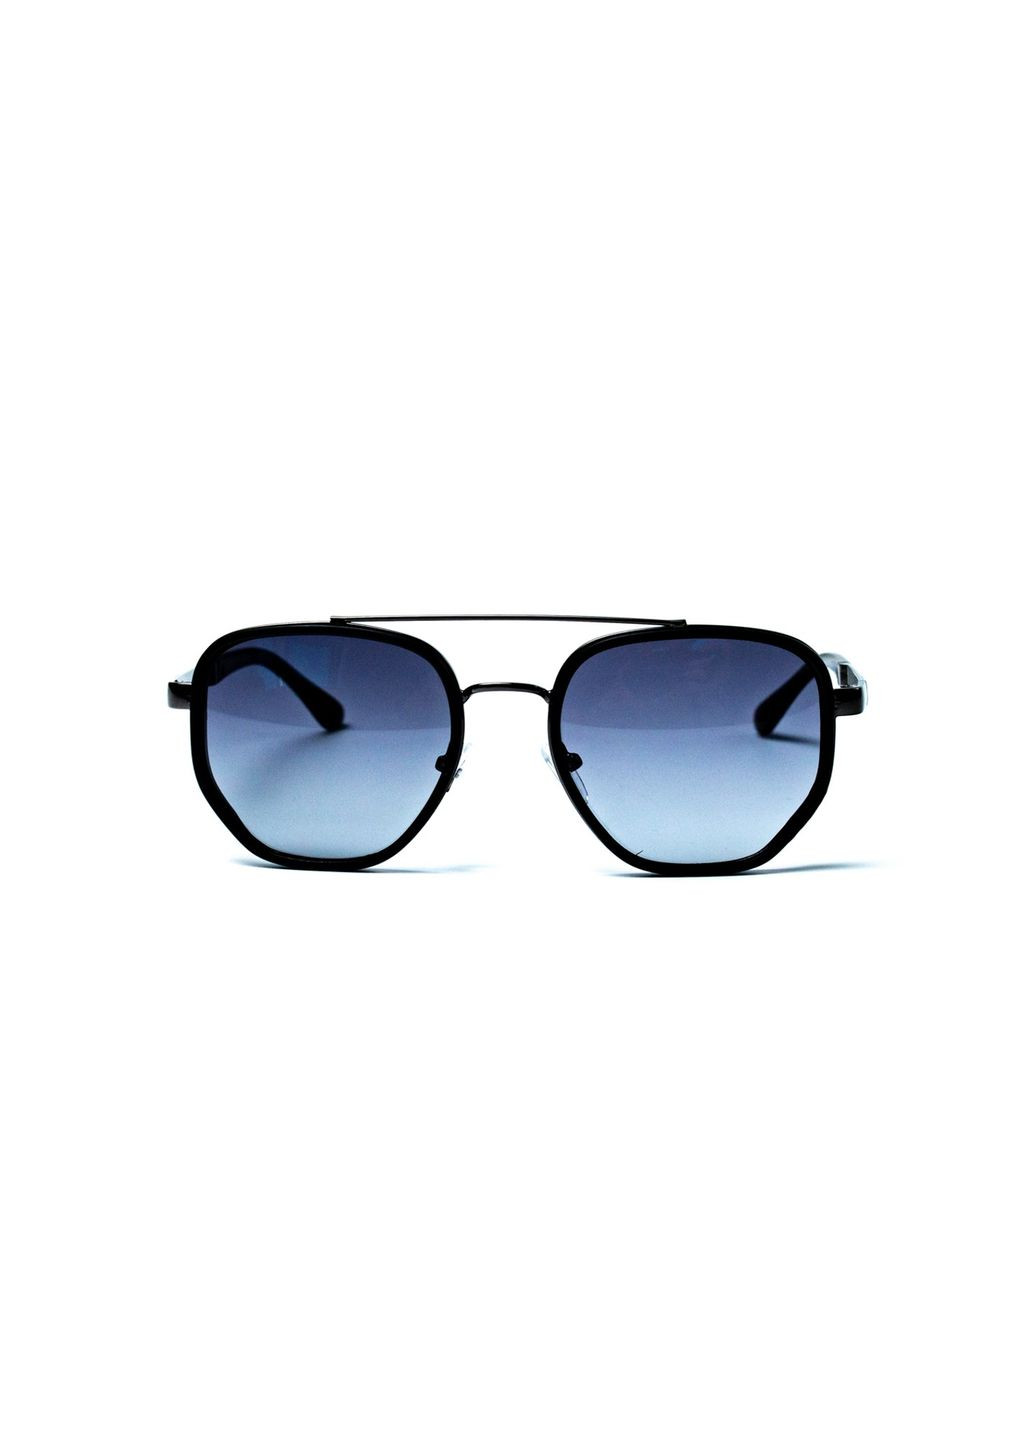 Солнцезащитные очки с поляризацией Фэшн-классика мужские 434-738 LuckyLOOK 434-738м (290849989)